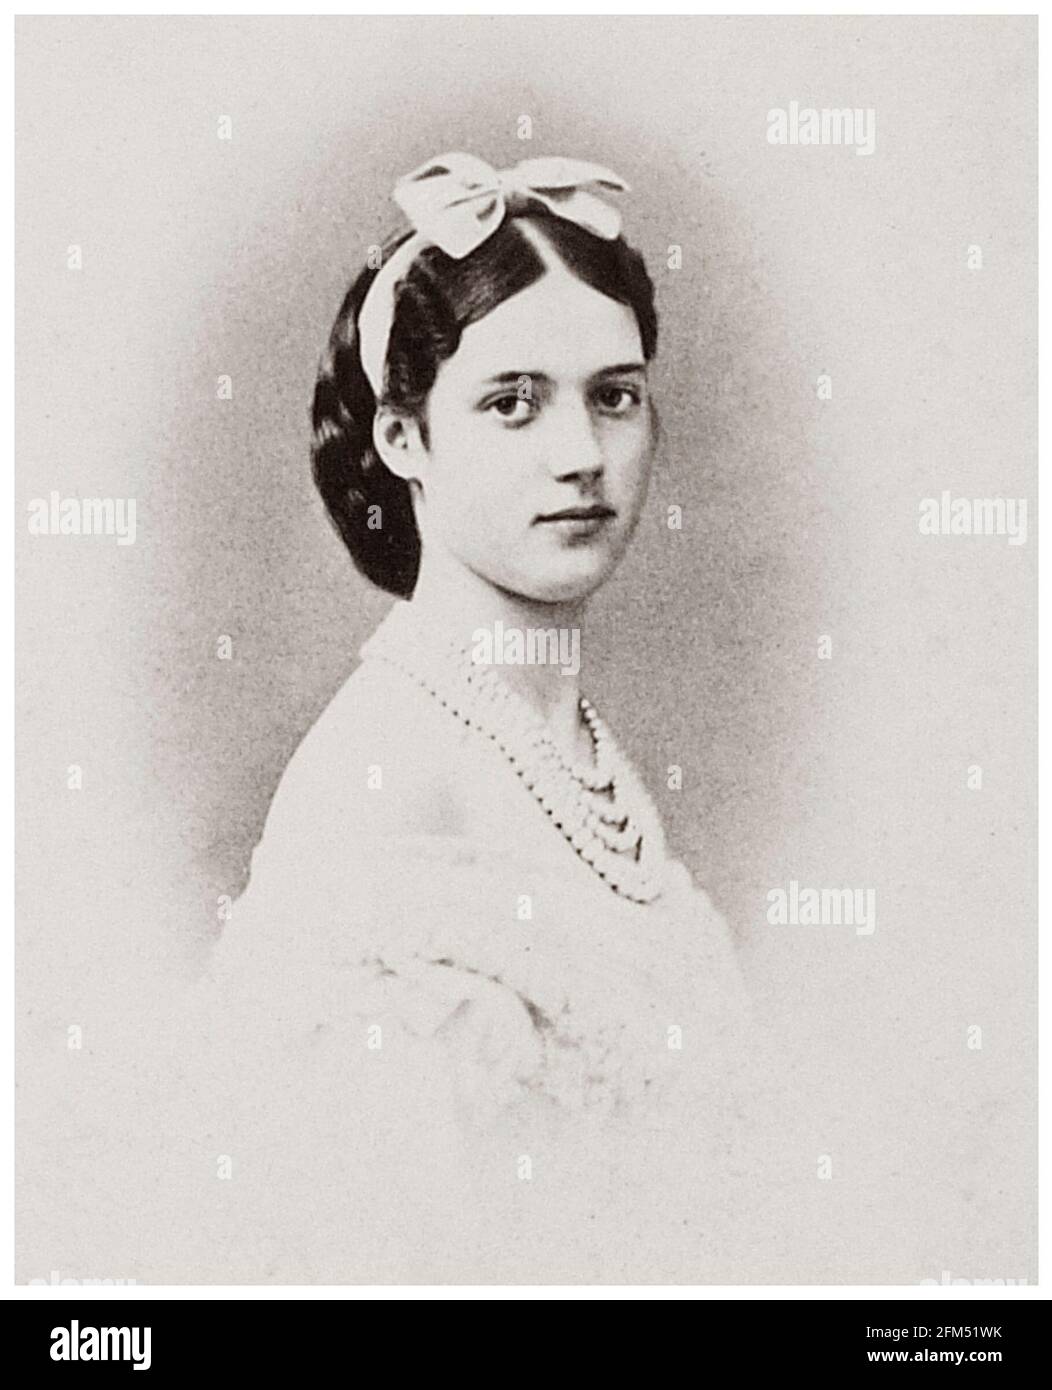 Maria Feodorovna (1847-1928), (princesse Dagmar du Danemark), plus tard impératrice de Russie (1881-1894), épouse d'Alexandre III de Russie, photographie de portrait de Georg E Hansen, vers 1865 Banque D'Images